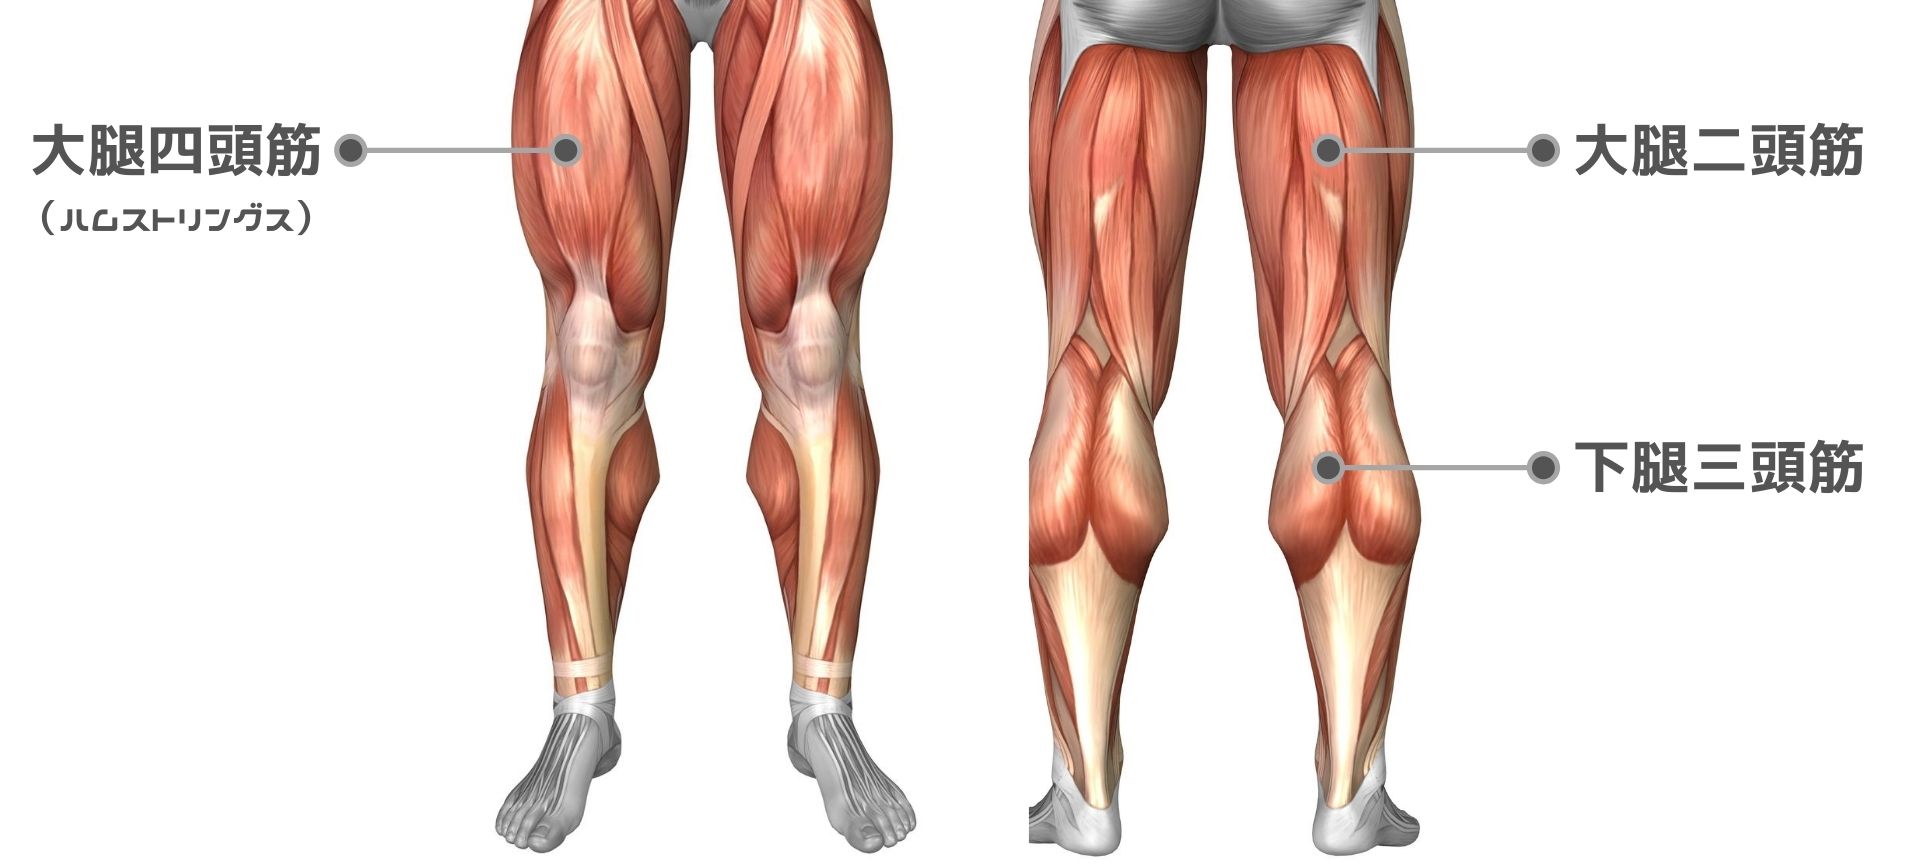 膝の痛みを予防する筋トレ ストレッチ 前もも 裏もも ふくらはぎの筋肉をトレーニングしよう ライフスタイル スポーツブル スポブル